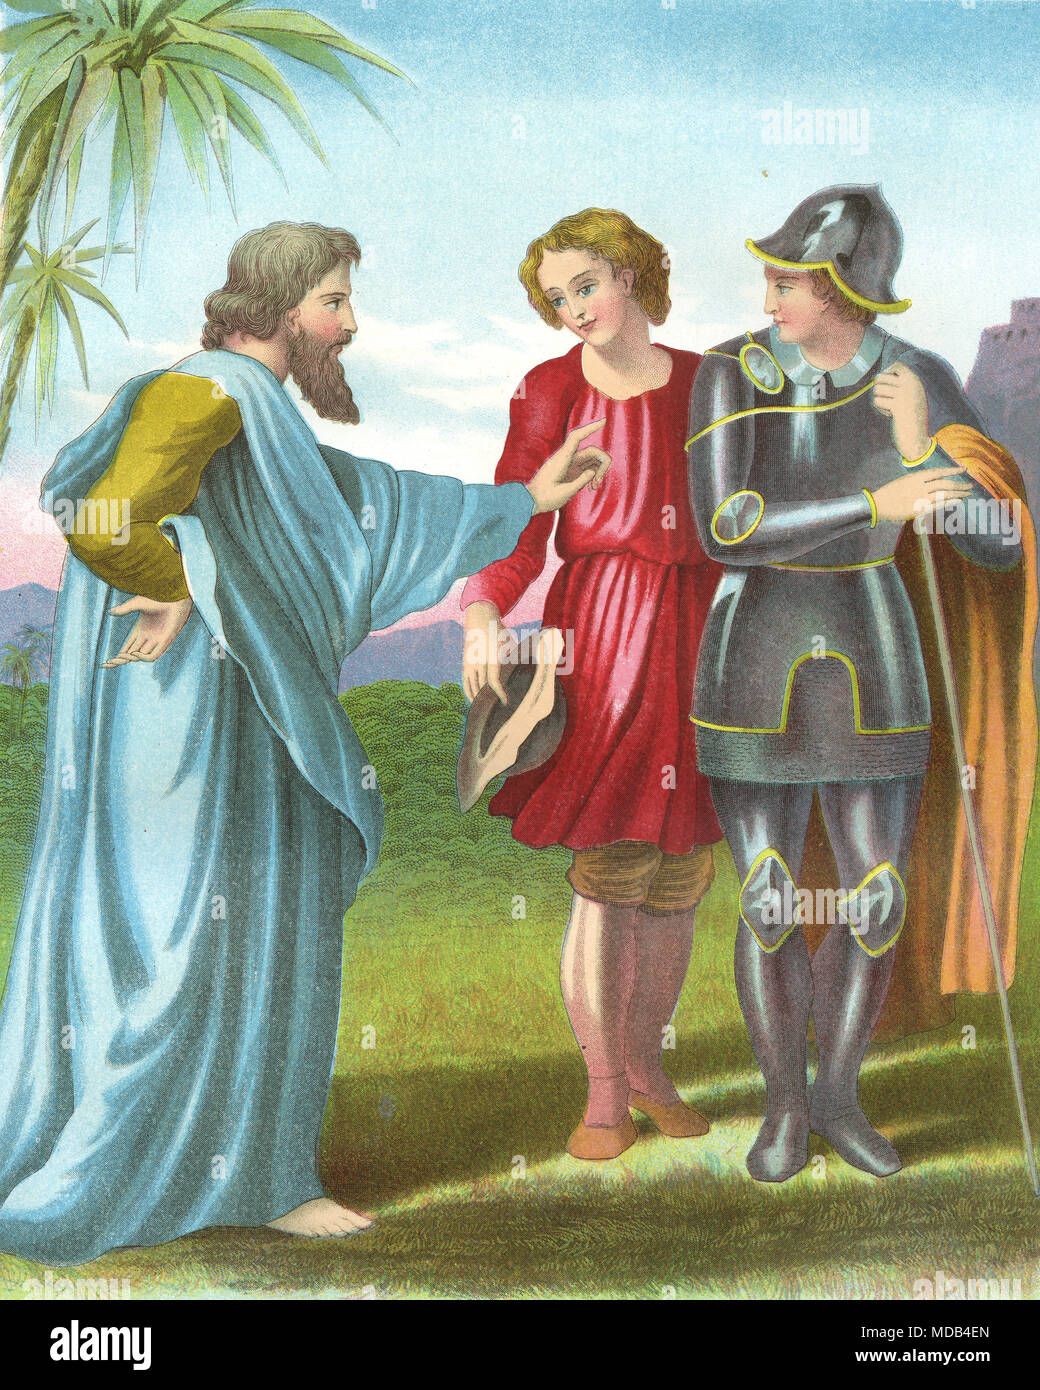 Litografía coloreada de evangelista adelantar a los peregrinos. A partir de una imagen original en la selección de obras de John Bunyan, circa 1840 Foto de stock